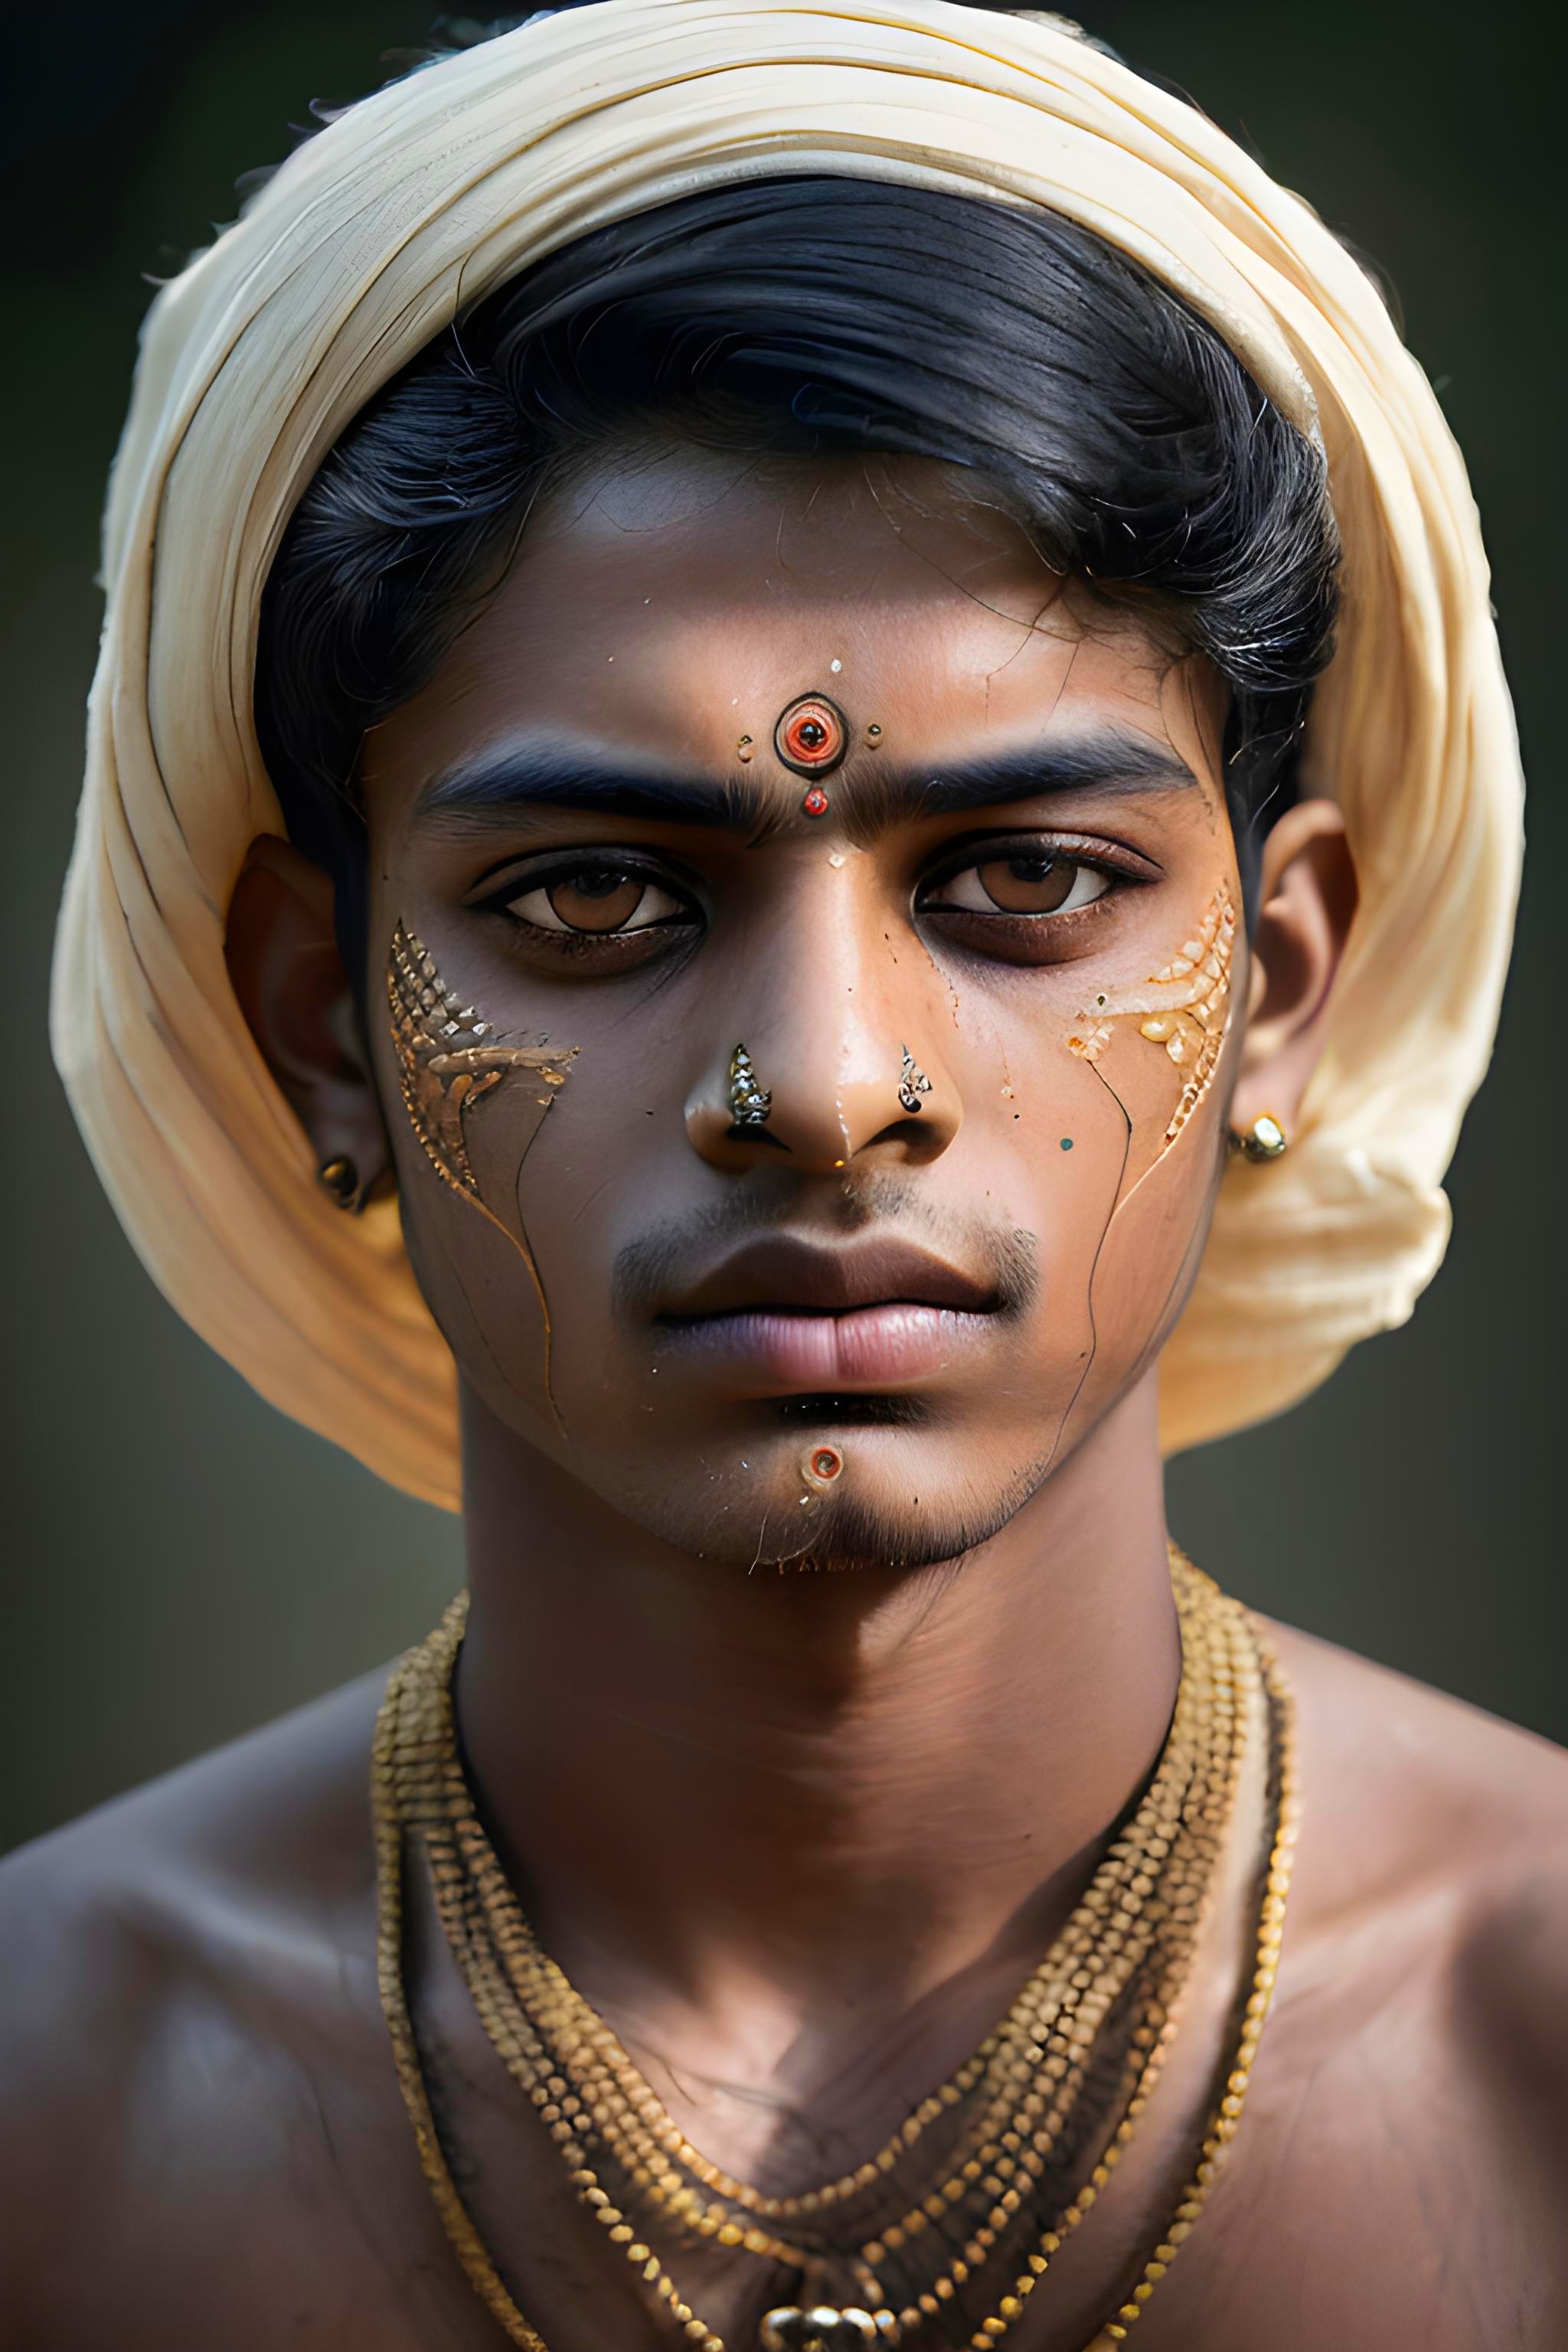 Portrait of Young Hindu Man by NeuralPainter on DeviantArt